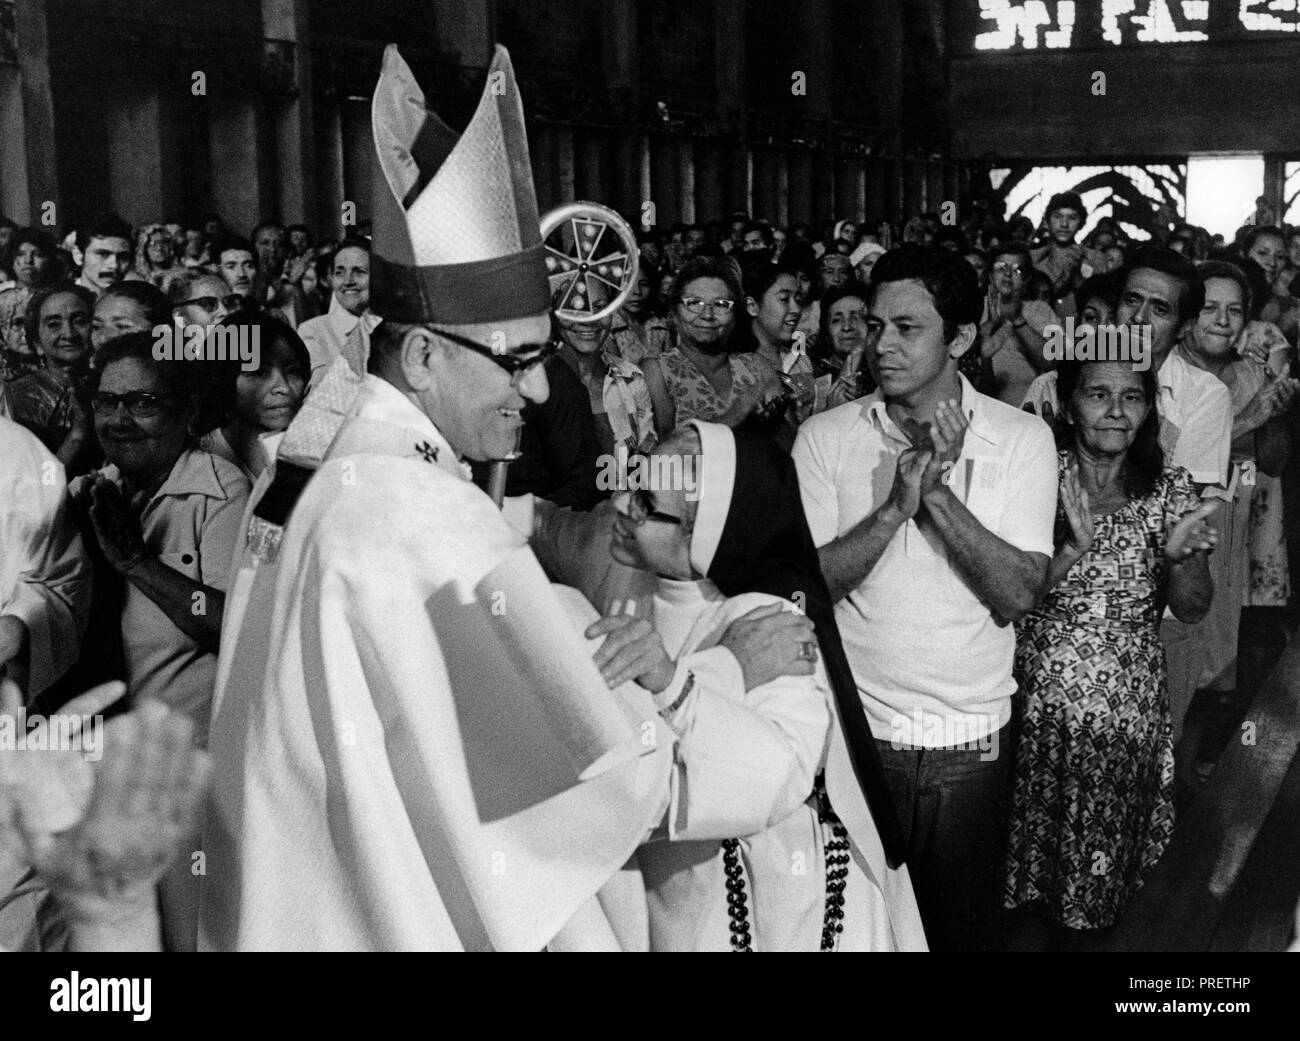 Óscar Arnulfo Romero y Galdámez (15 agosto 1917 - 24 Marzo 1980) celebra la santa messa. Egli era un prelato della Chiesa cattolica in El Salvador, che ha servito come l Arcivescovo di San Salvador. Egli ha parlato fuori contro la povertà, l'ingiustizia sociale, omicidi e torture. In 1980, Romero è stato assassinato mentre offrendo la Messa nella cappella dell'Ospedale della Divina Provvidenza. Anche se nessuno è mai stato condannato per il reato, di indagini da parte delle Nazioni Unite-creato Commissione della Verità per El Salvador ha concluso che di estrema destra politico e la morte leader di squadra Roberto D'Aubuisson aveva dato l'ordine. (POOL) Foto Stock